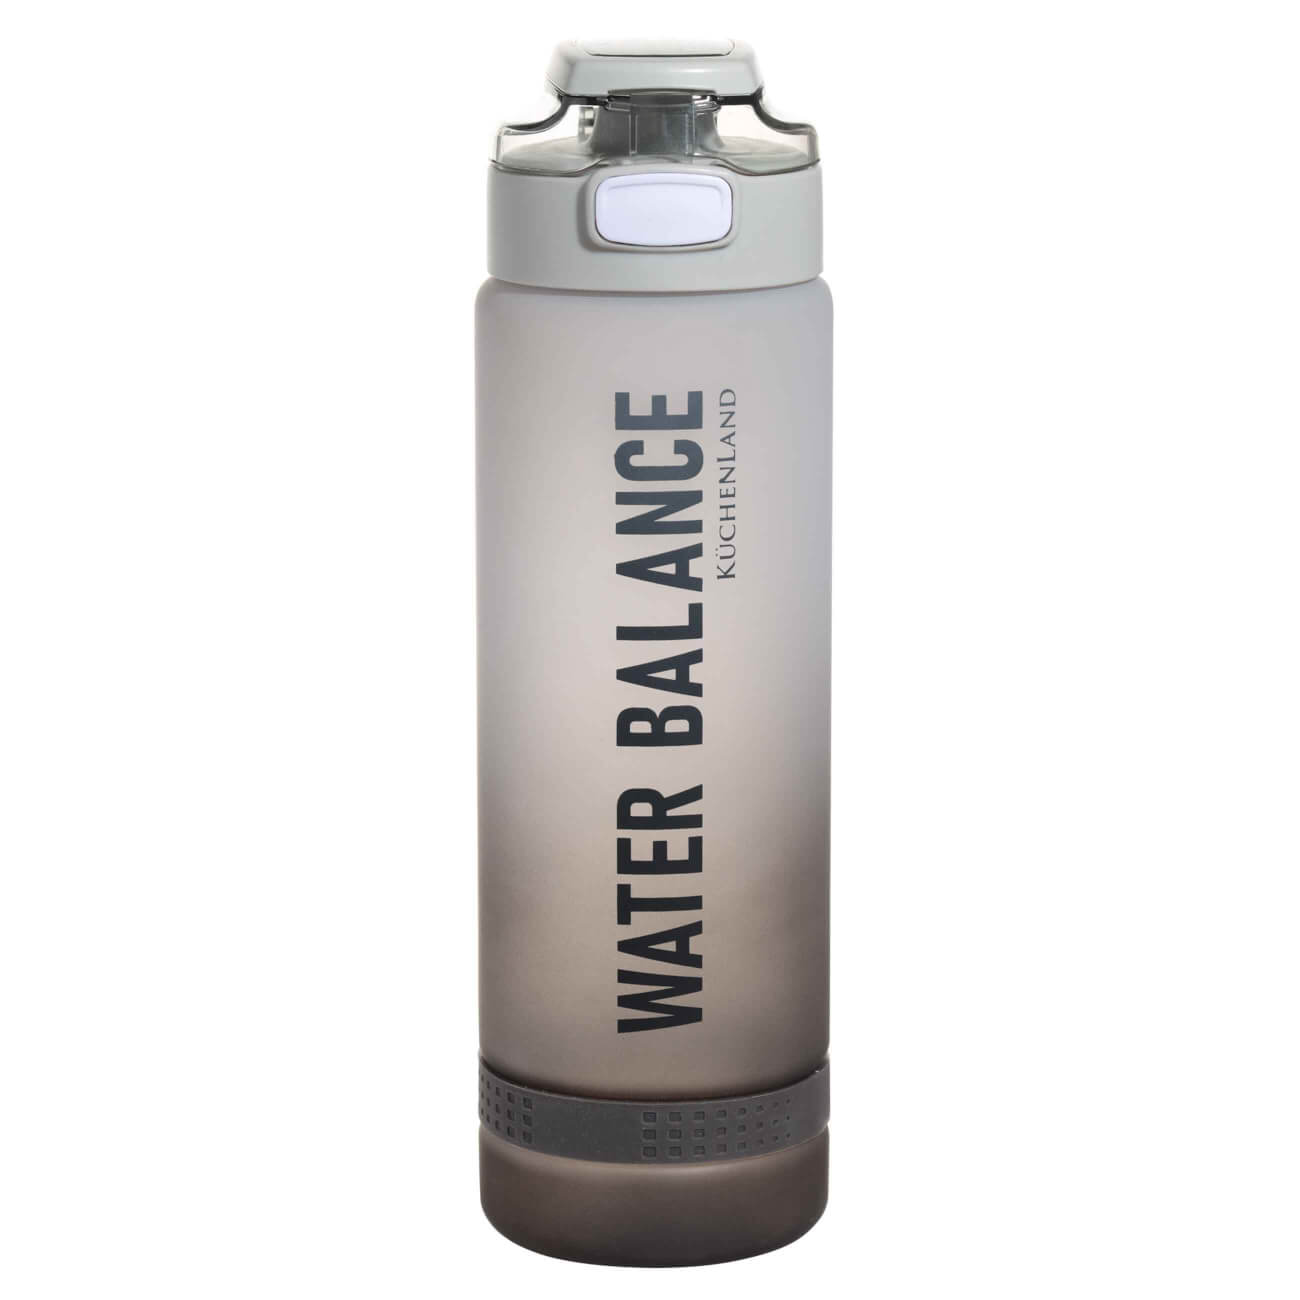 Бутылка для воды, 1 л, пластик/силикон, серая, Water balance, Sport бутылка для воды n3010200 0 6 л